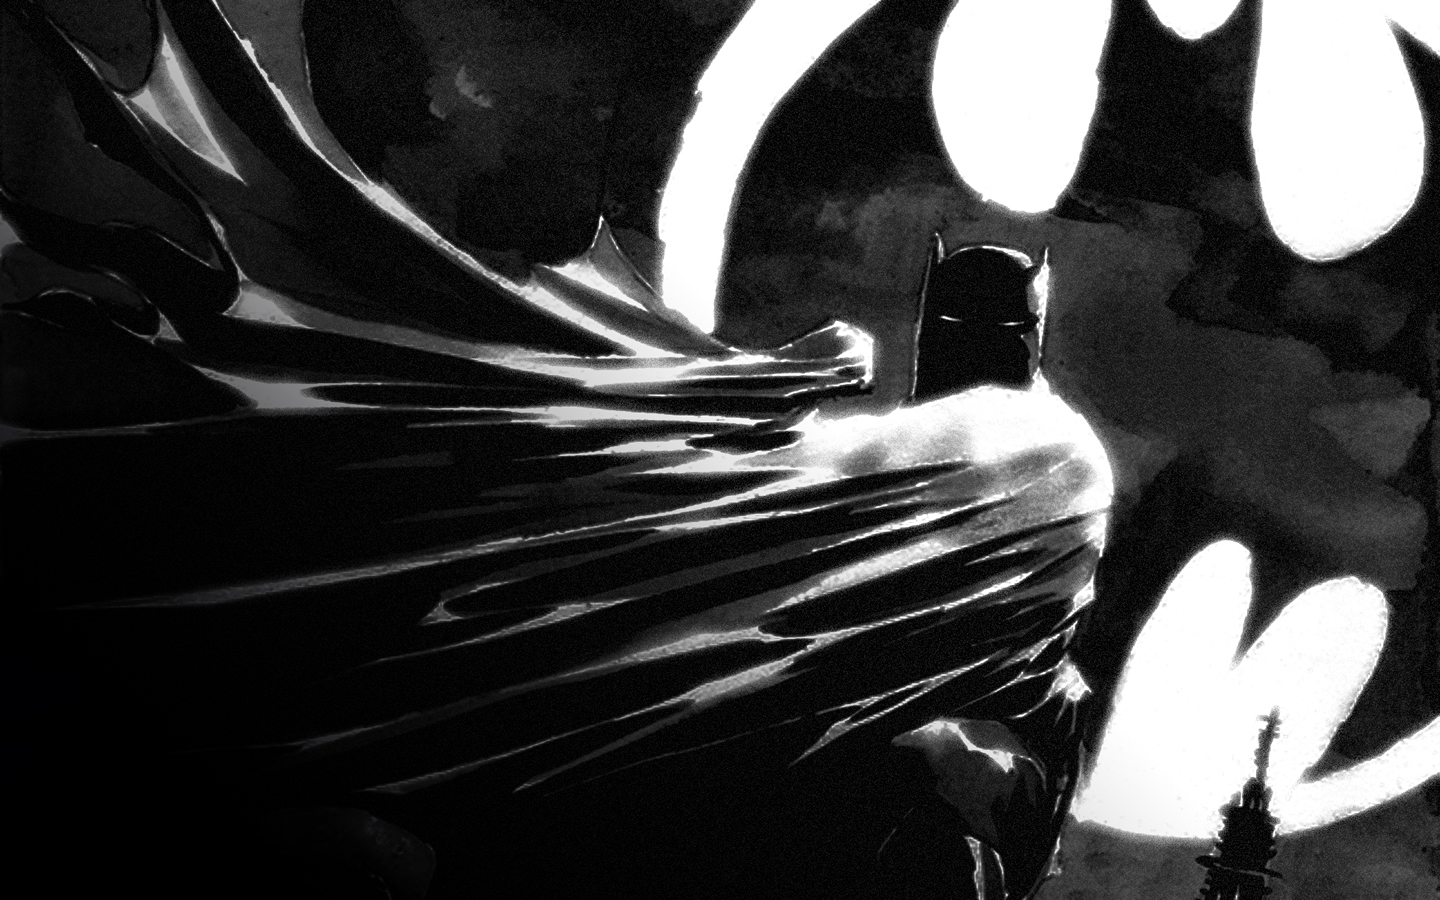 Batman Sculpture Wallpaper Picture High Resolution